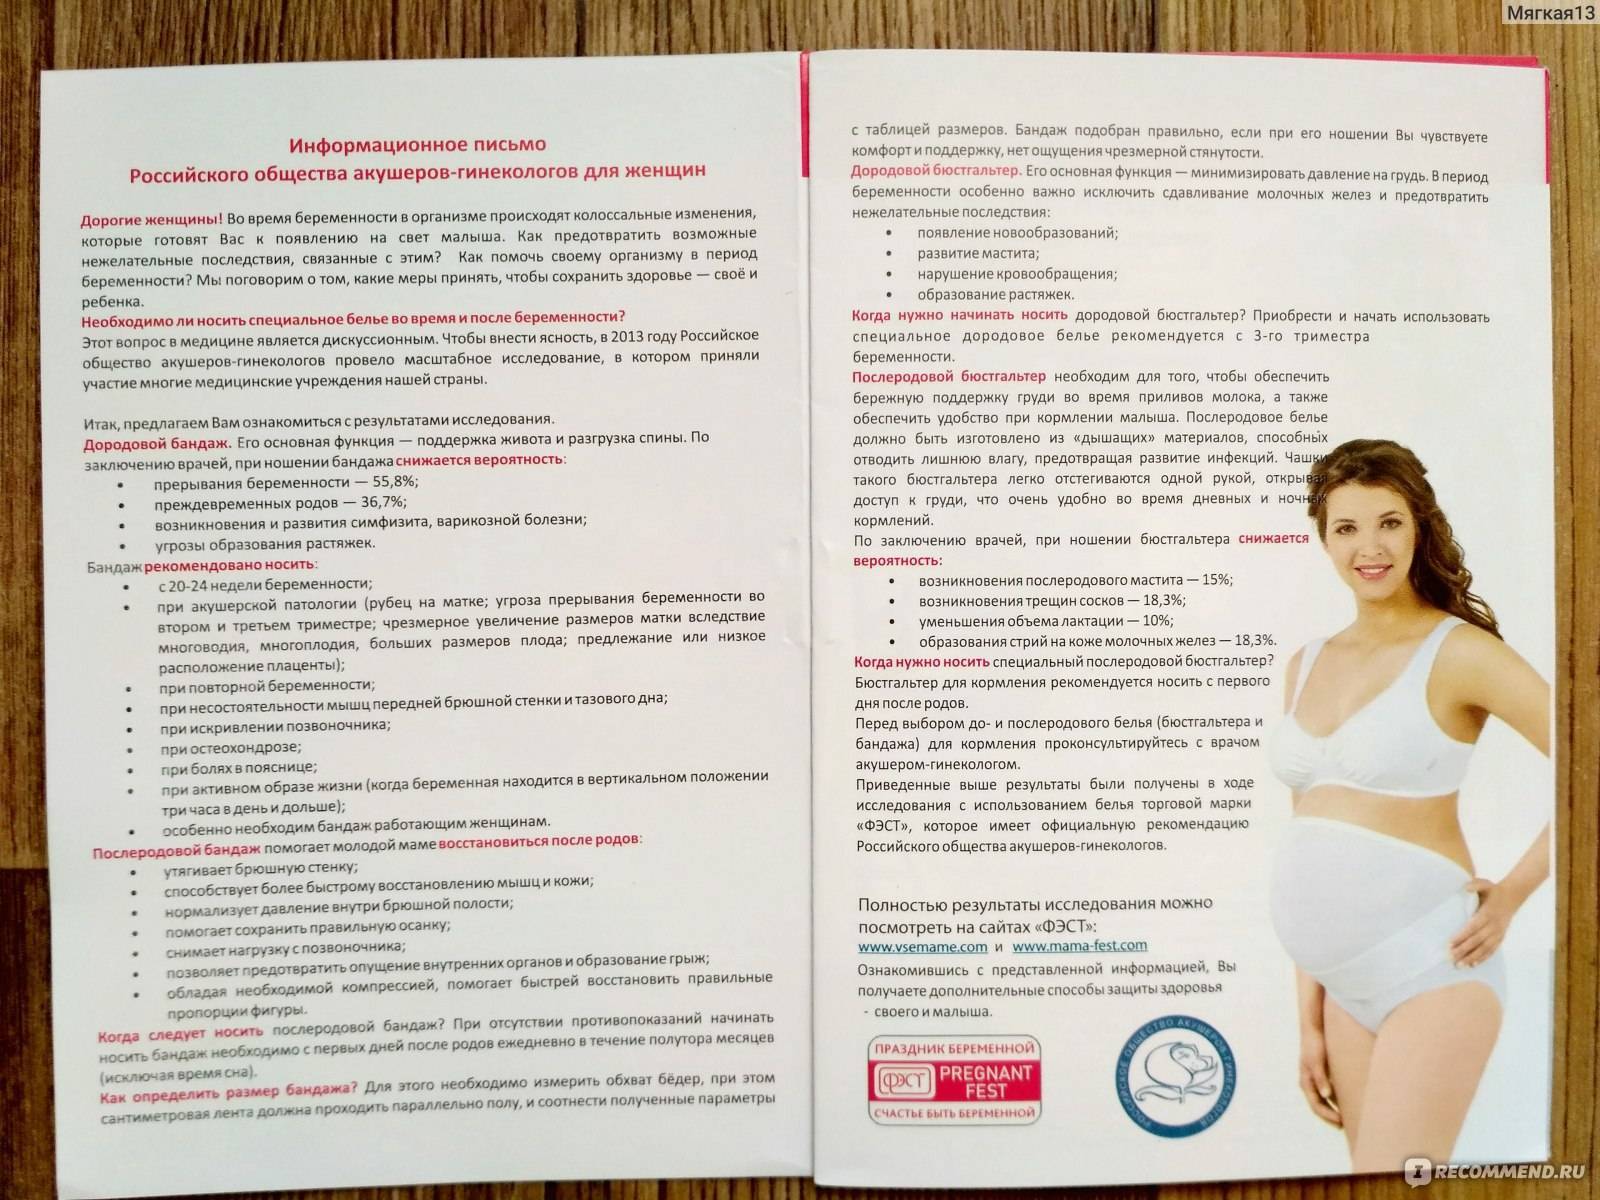 Какой лучше выбрать бандаж для беременных - критерии оценки и советы